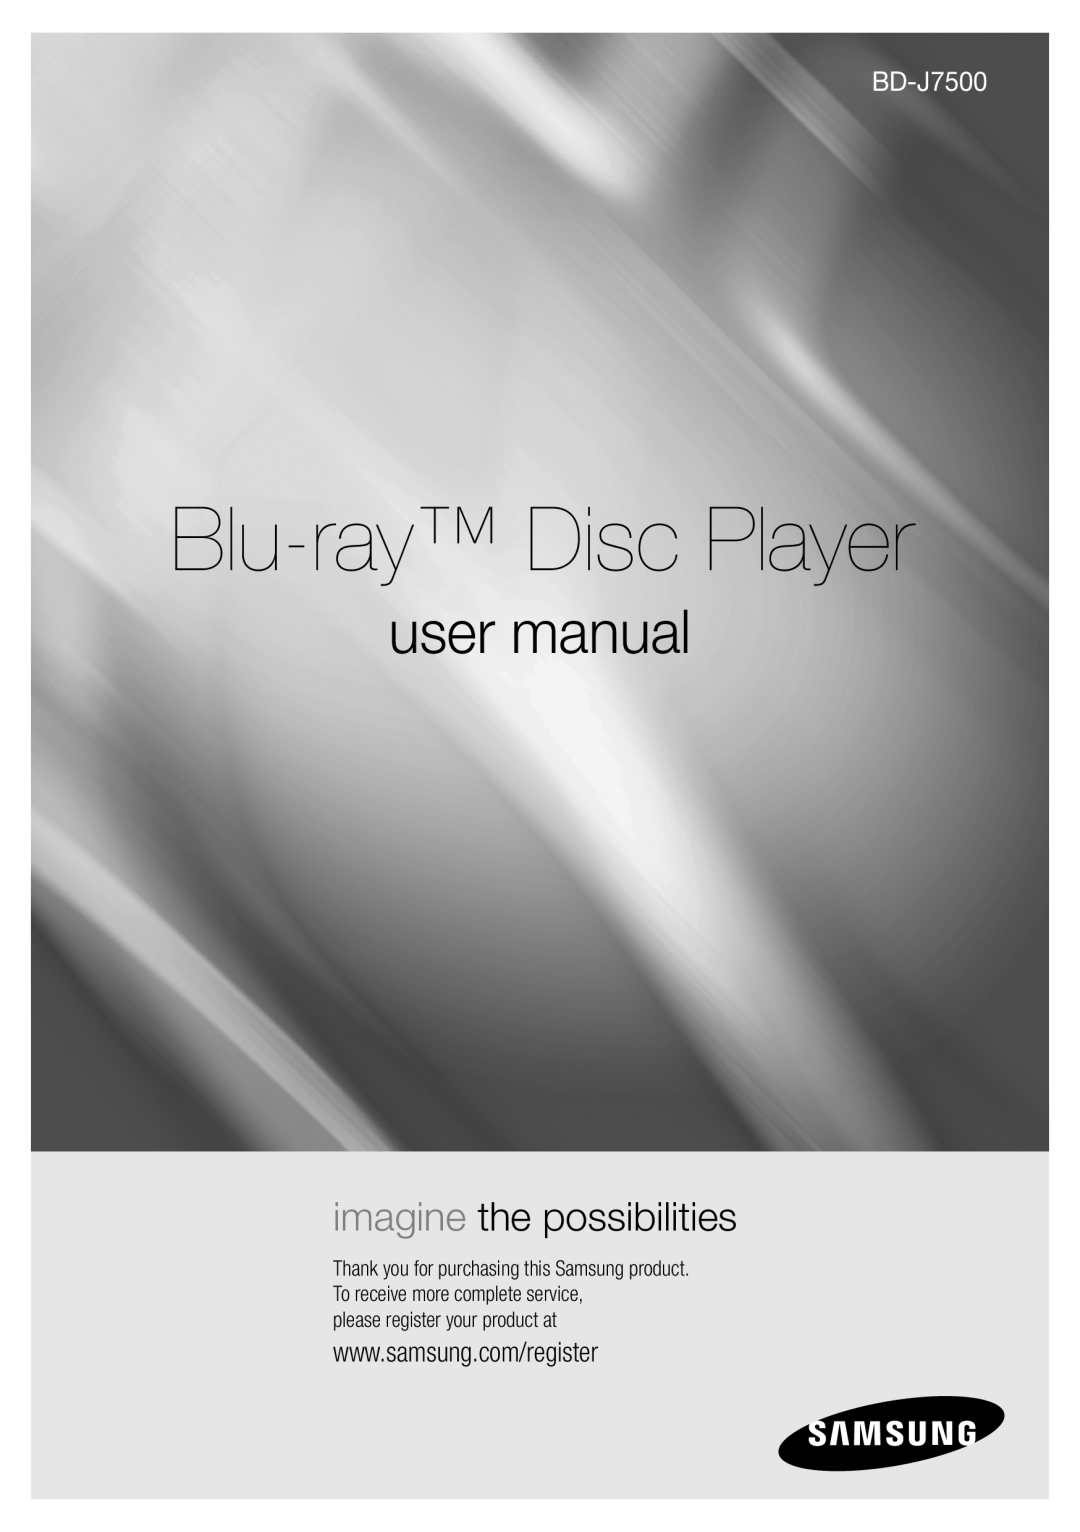 Samsung BD-J7500/EN manual Плейър за Blu-ray дискове, ръководство за потребителя, представете си възможностите 